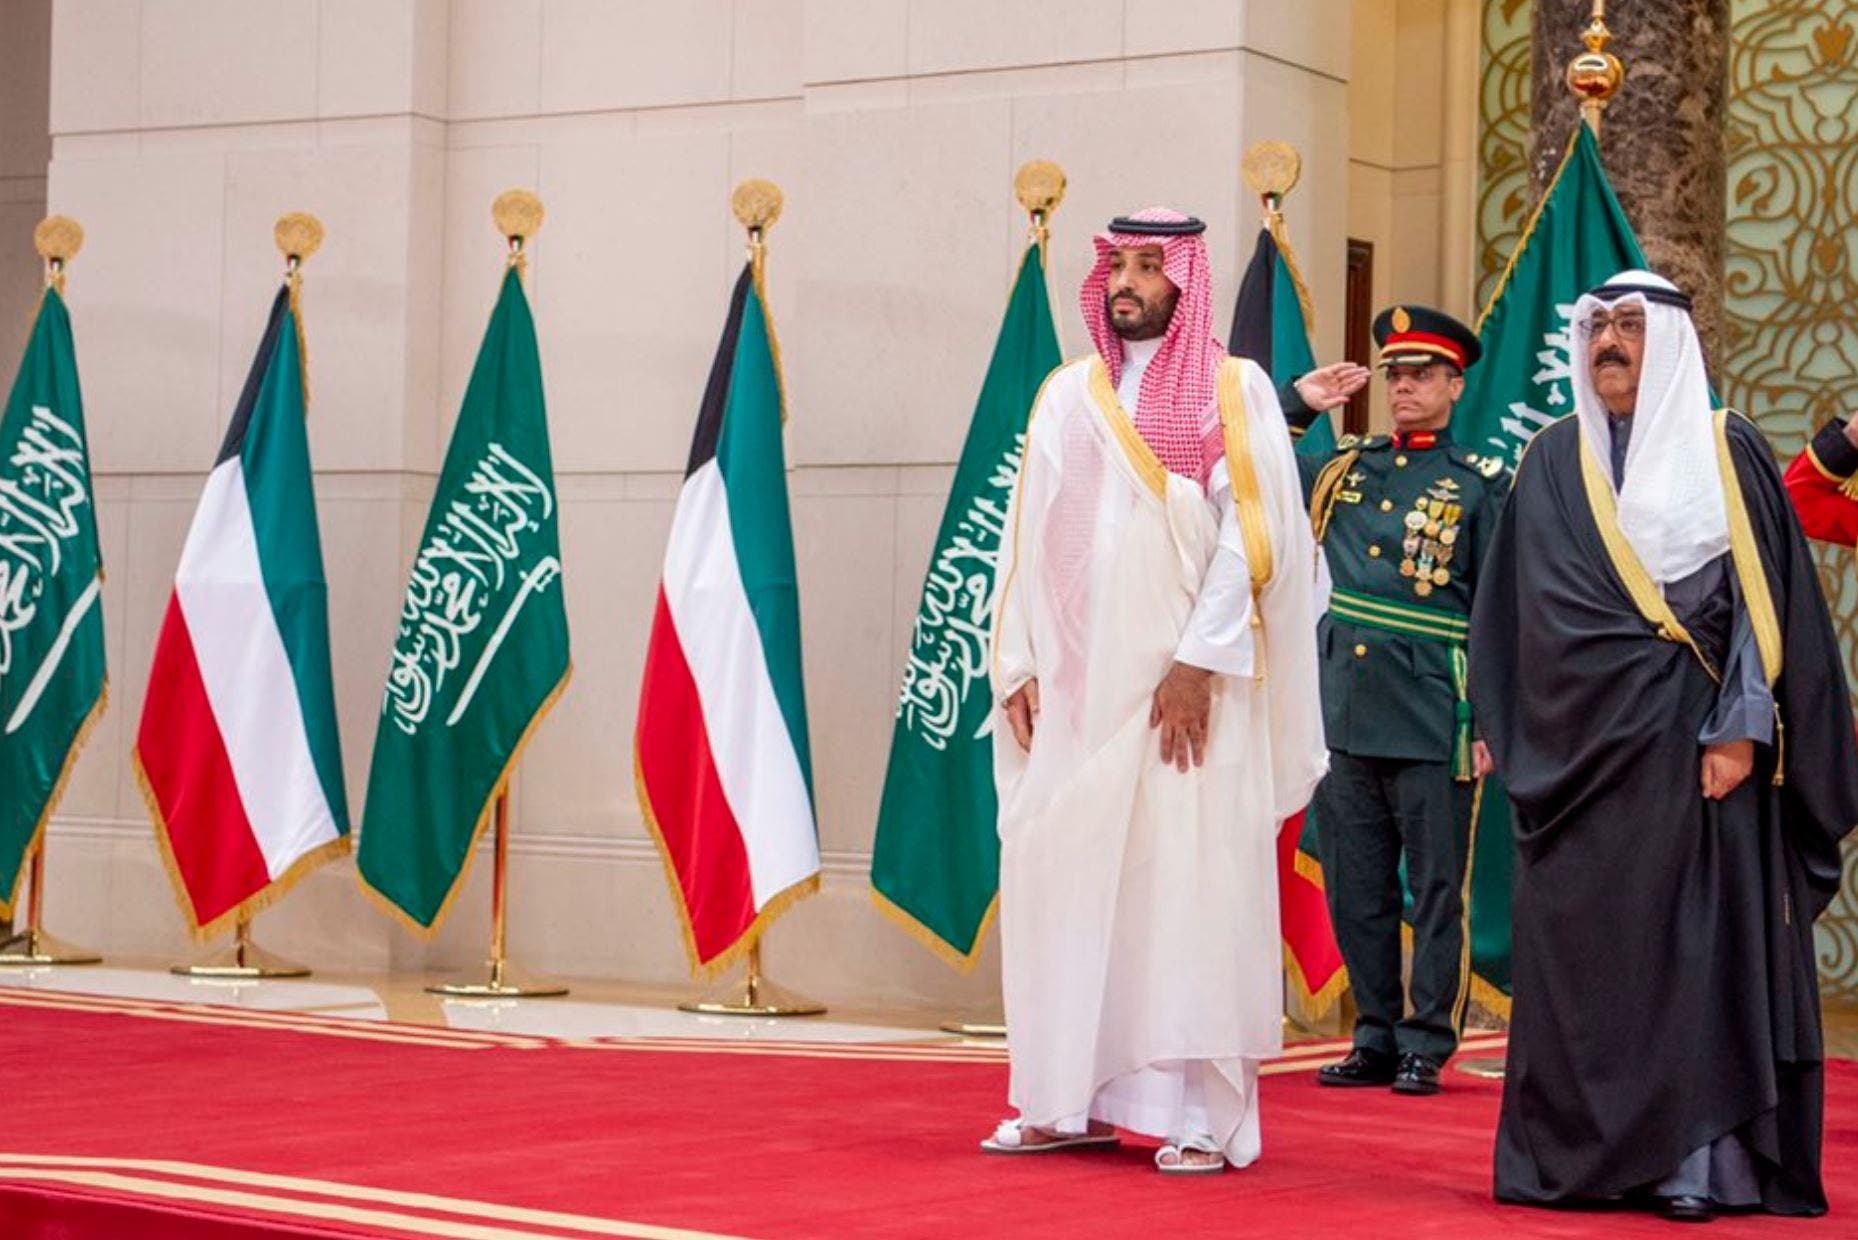 Prince Mohammed bin Salman arrives in Kuwait